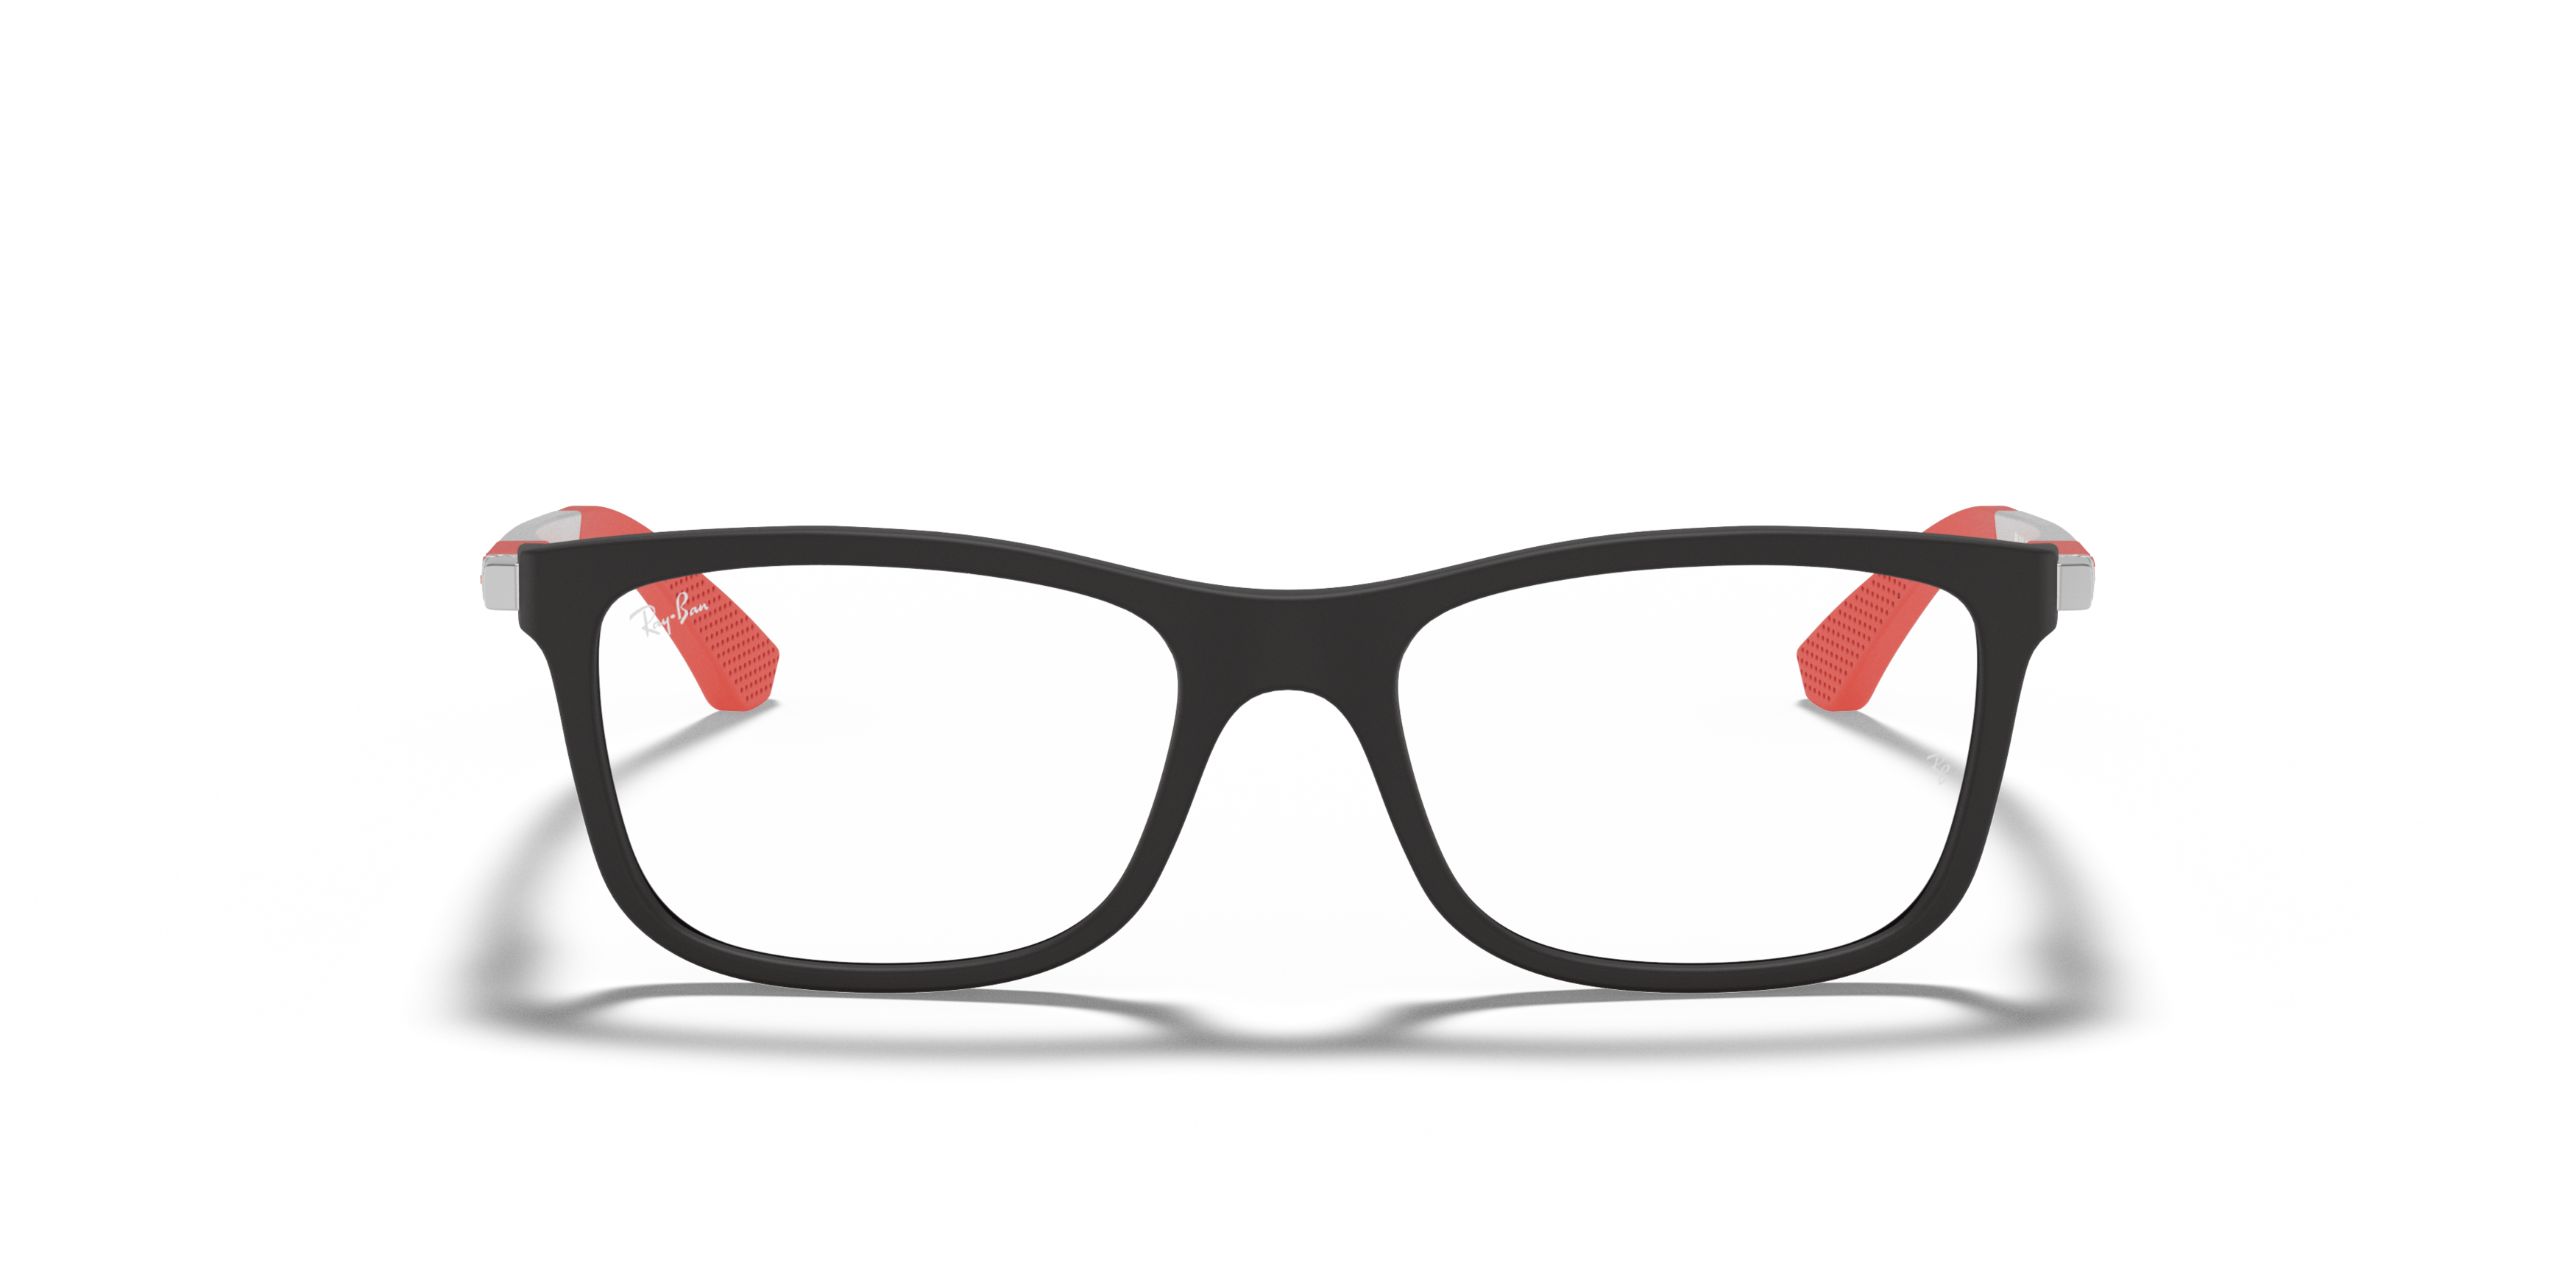 Har råd til anmodning Væk Ray-Ban briller børn | Ikoniske briller til børn | Synoptik